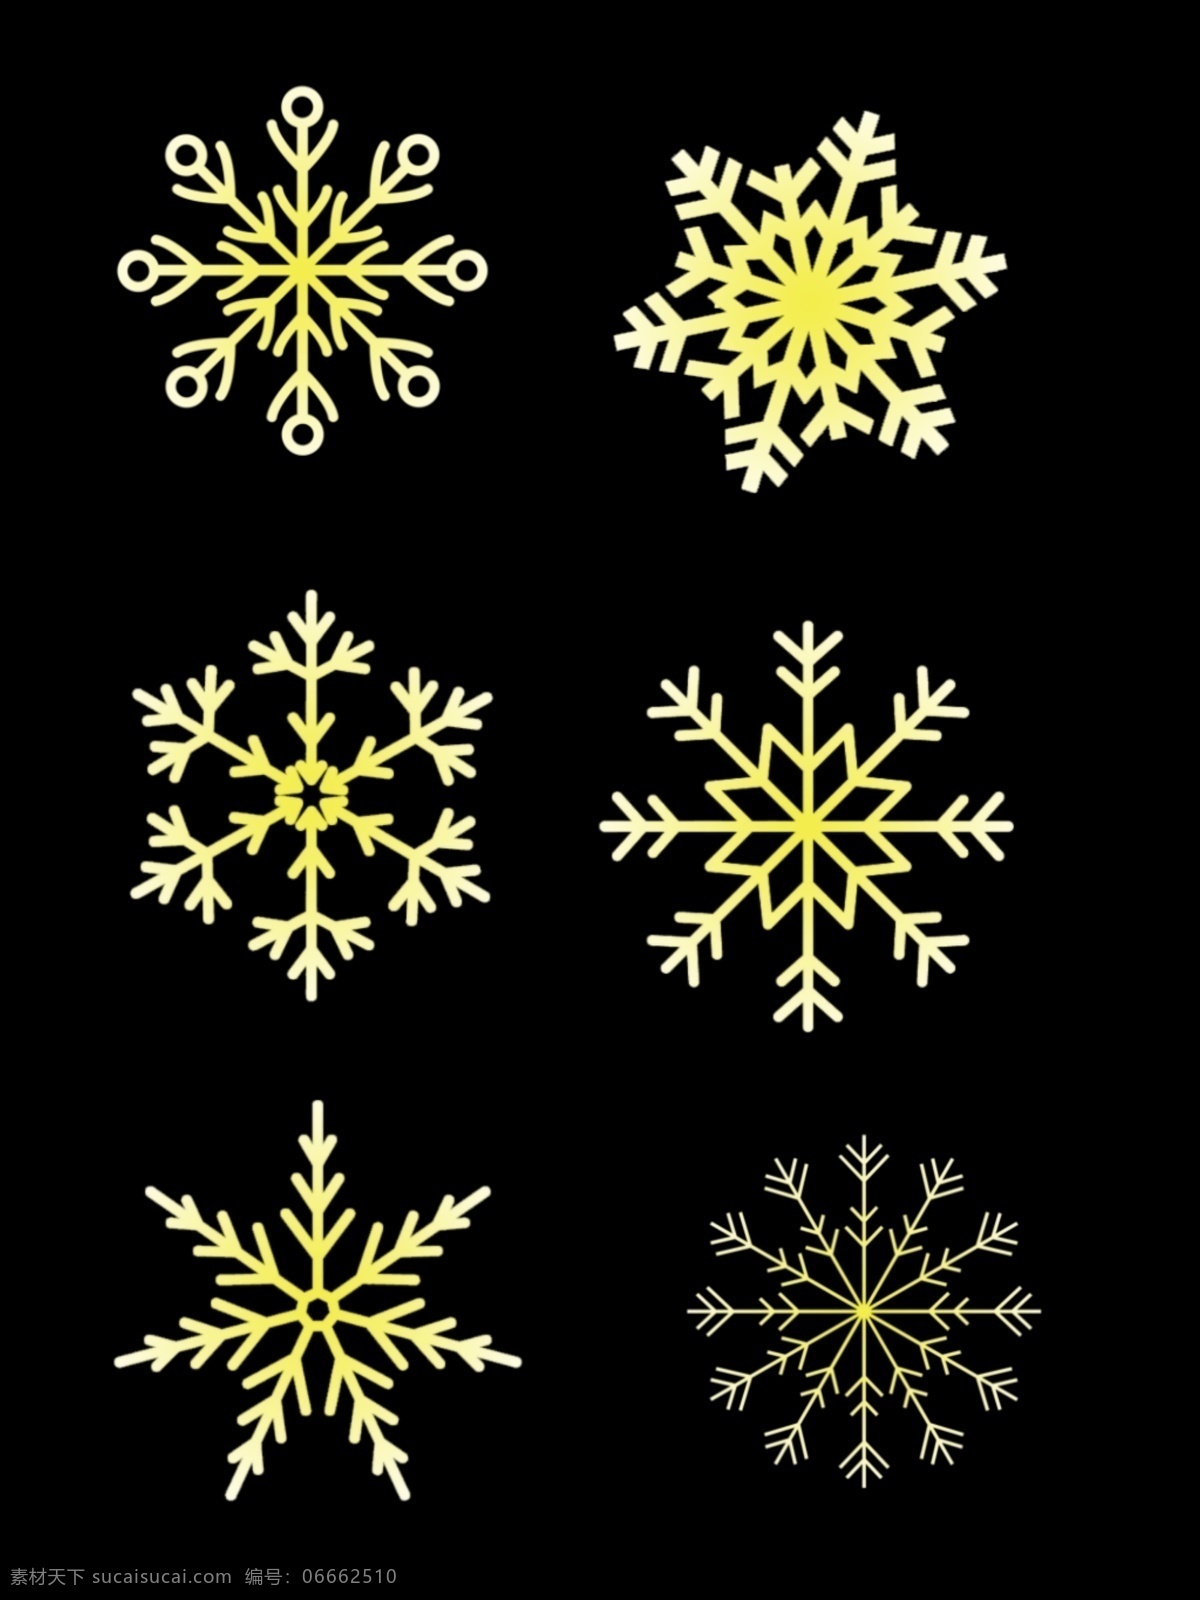 仿真 冰晶 冬季 金色 雪花 图 装饰 元素 金色雪花 仿真冰晶 图装饰元素